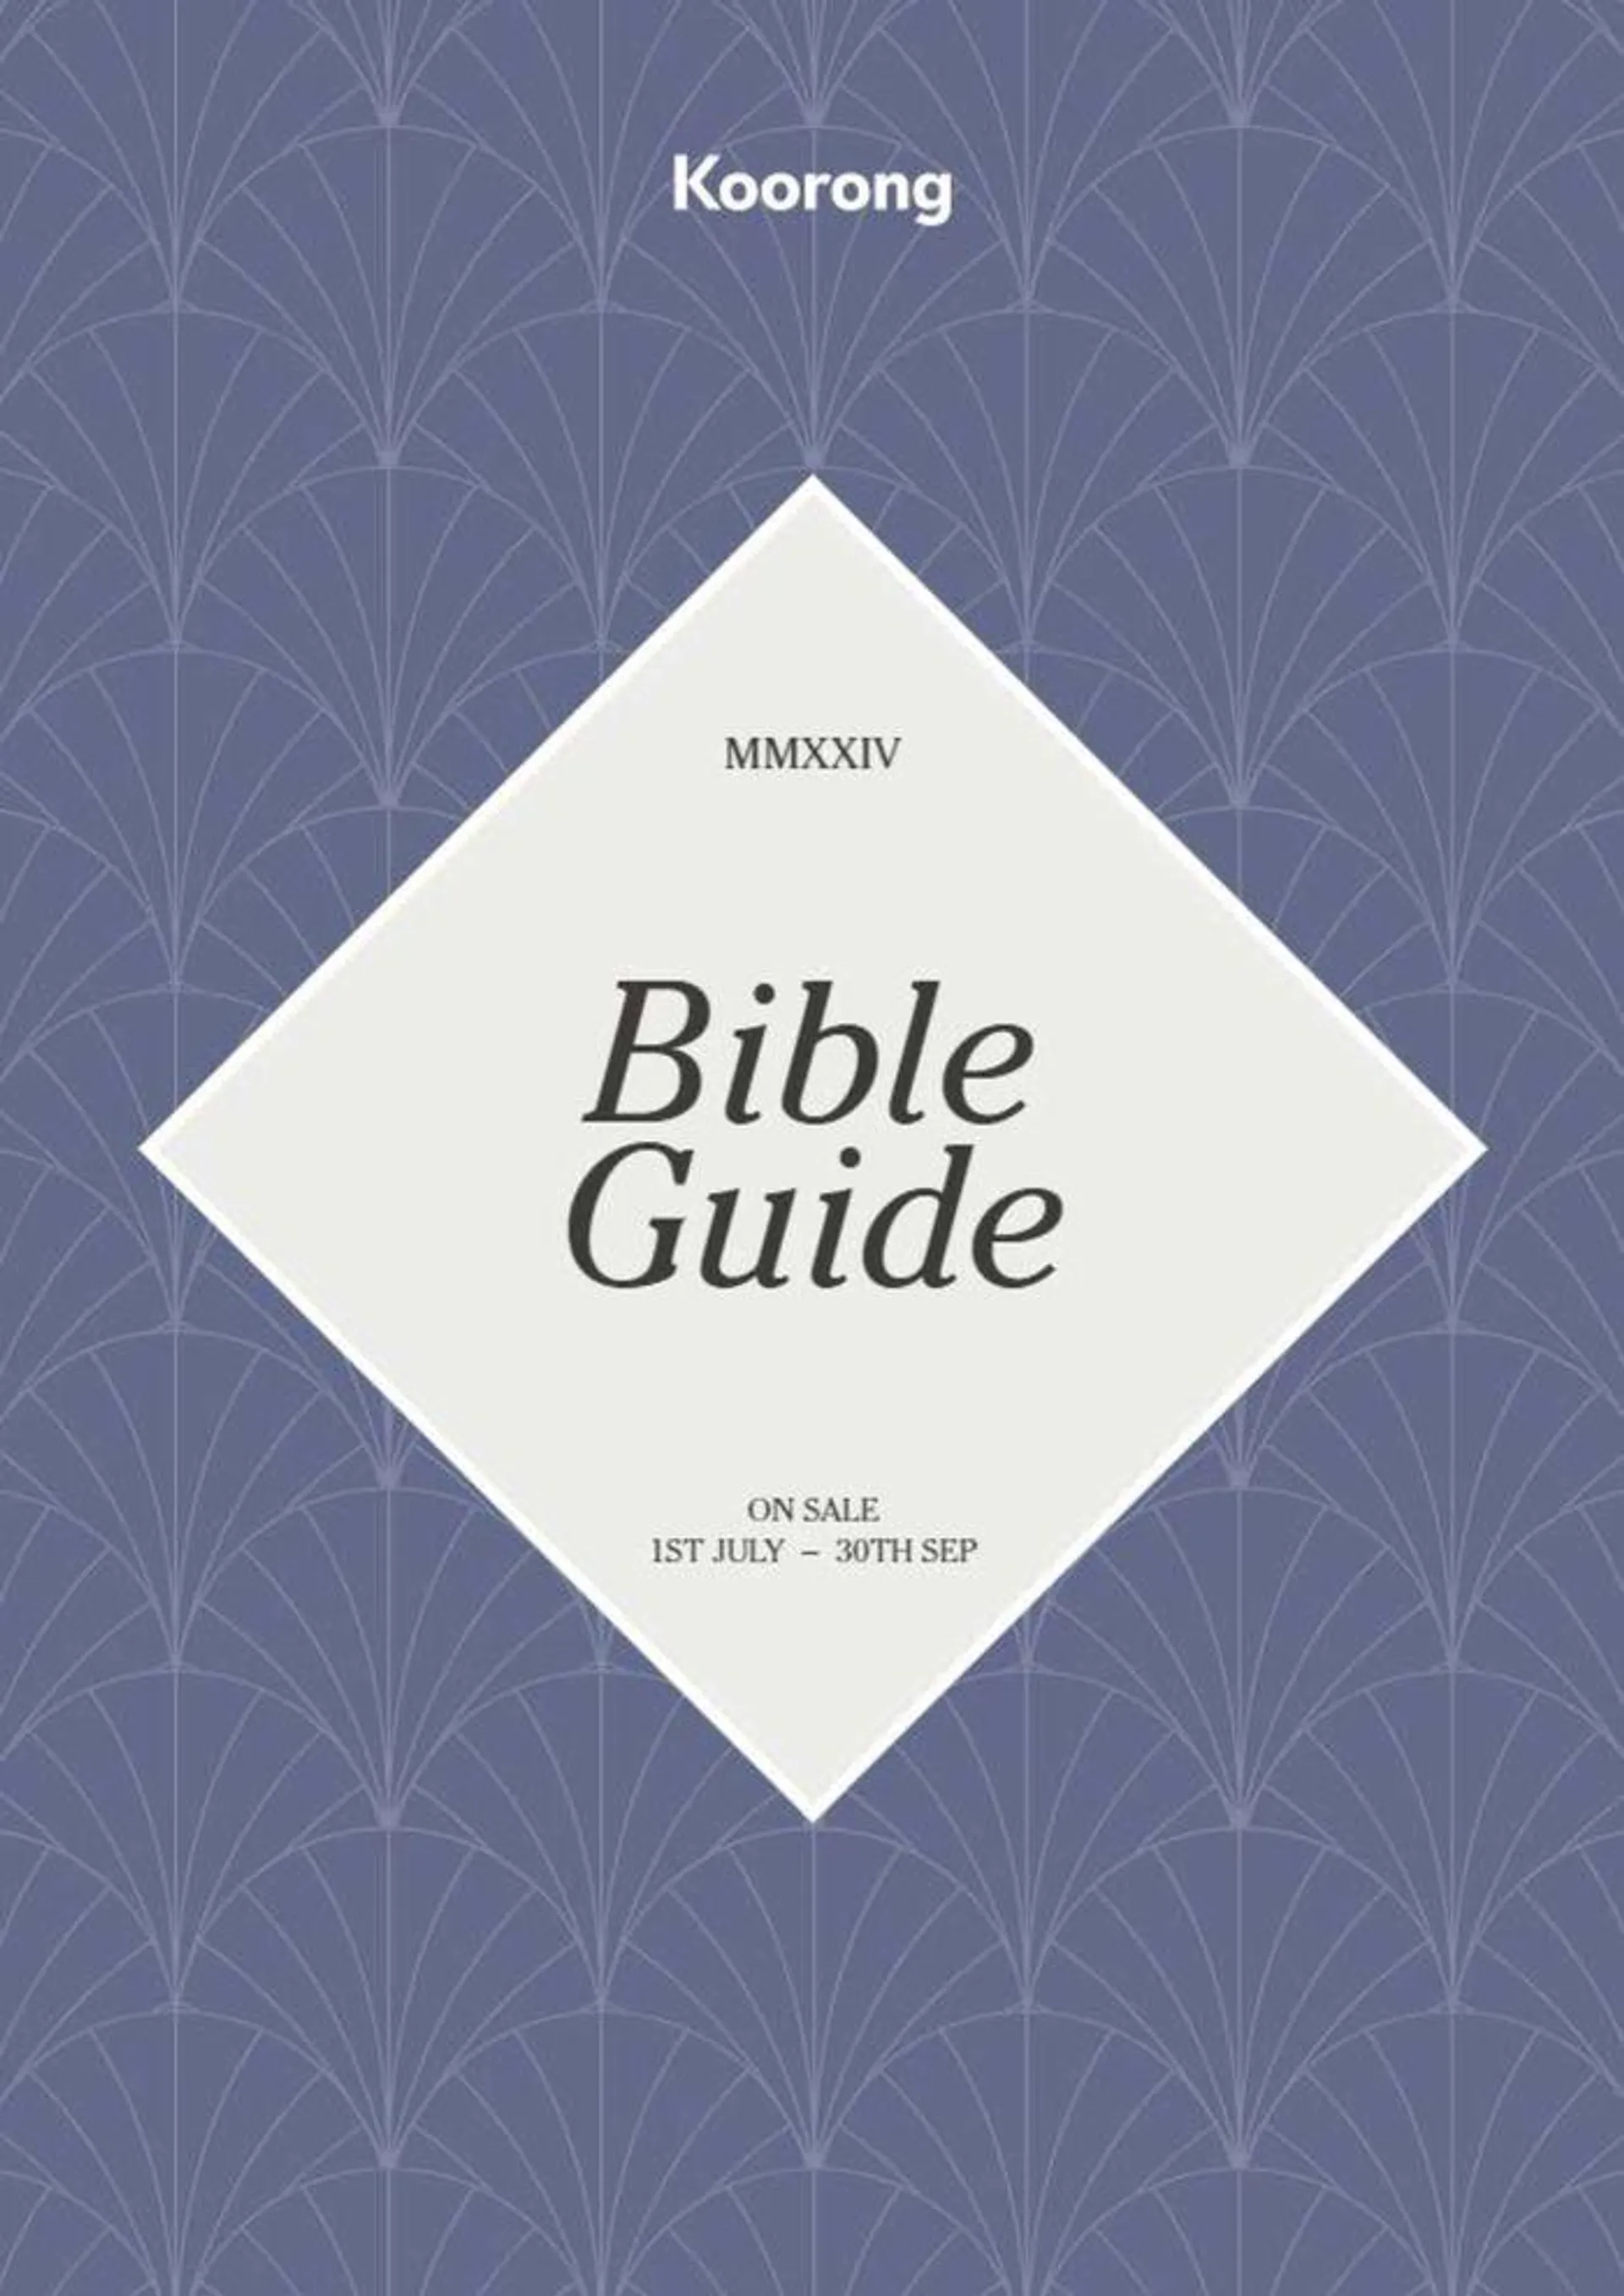 Bible Guide - 1